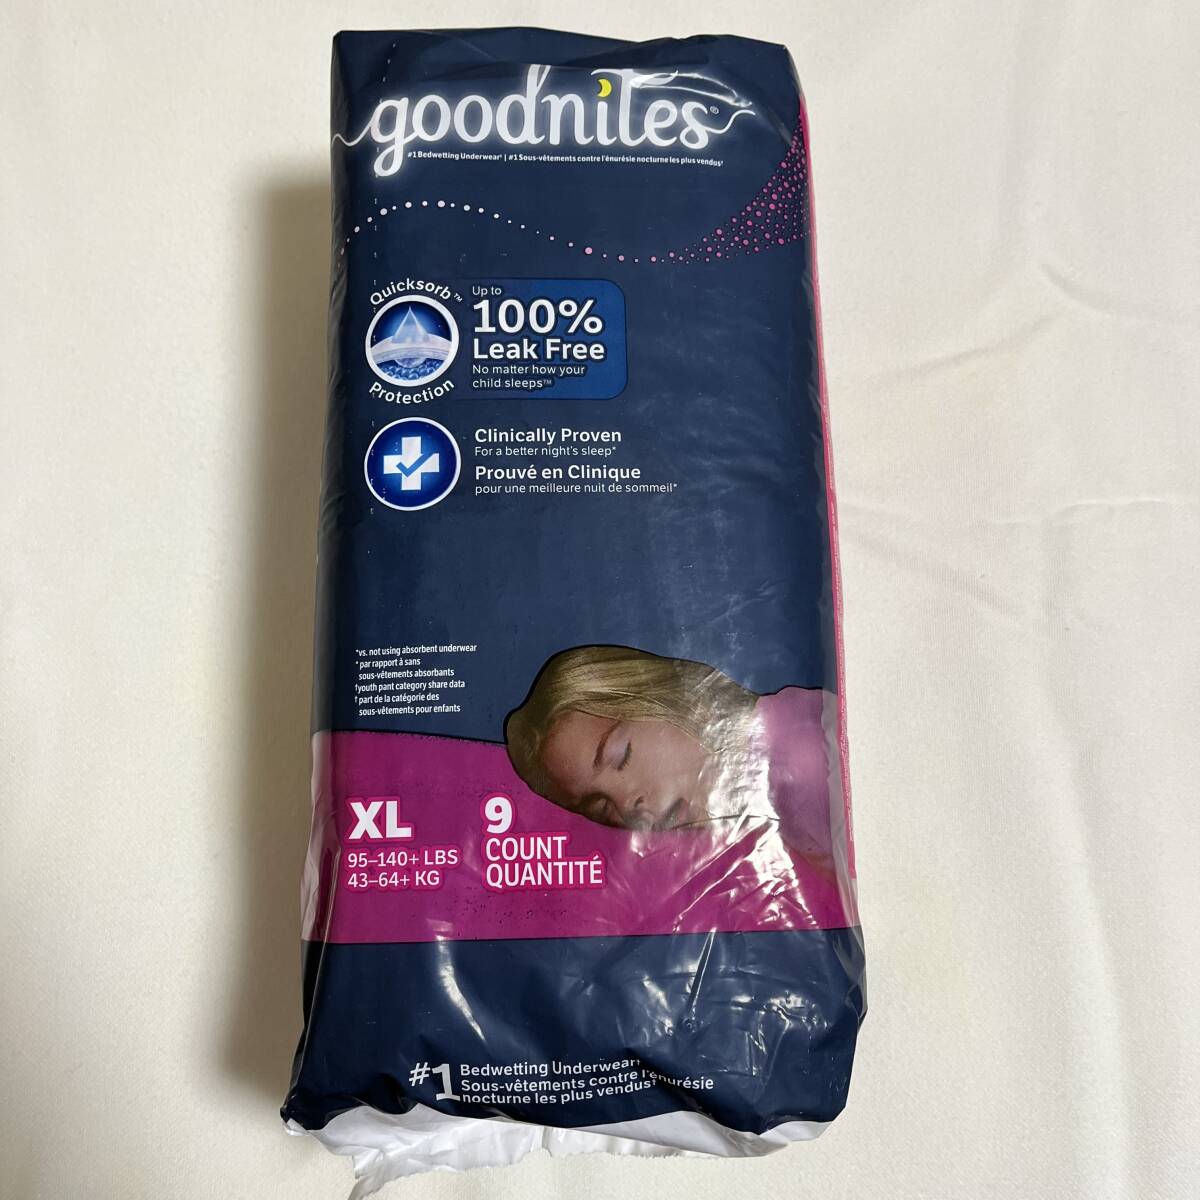 【リニューアル品】【海外の紙おむつ】Goodnites XL(43-64kg) 女の子用 9枚(1パック)【新品未開封】の画像1